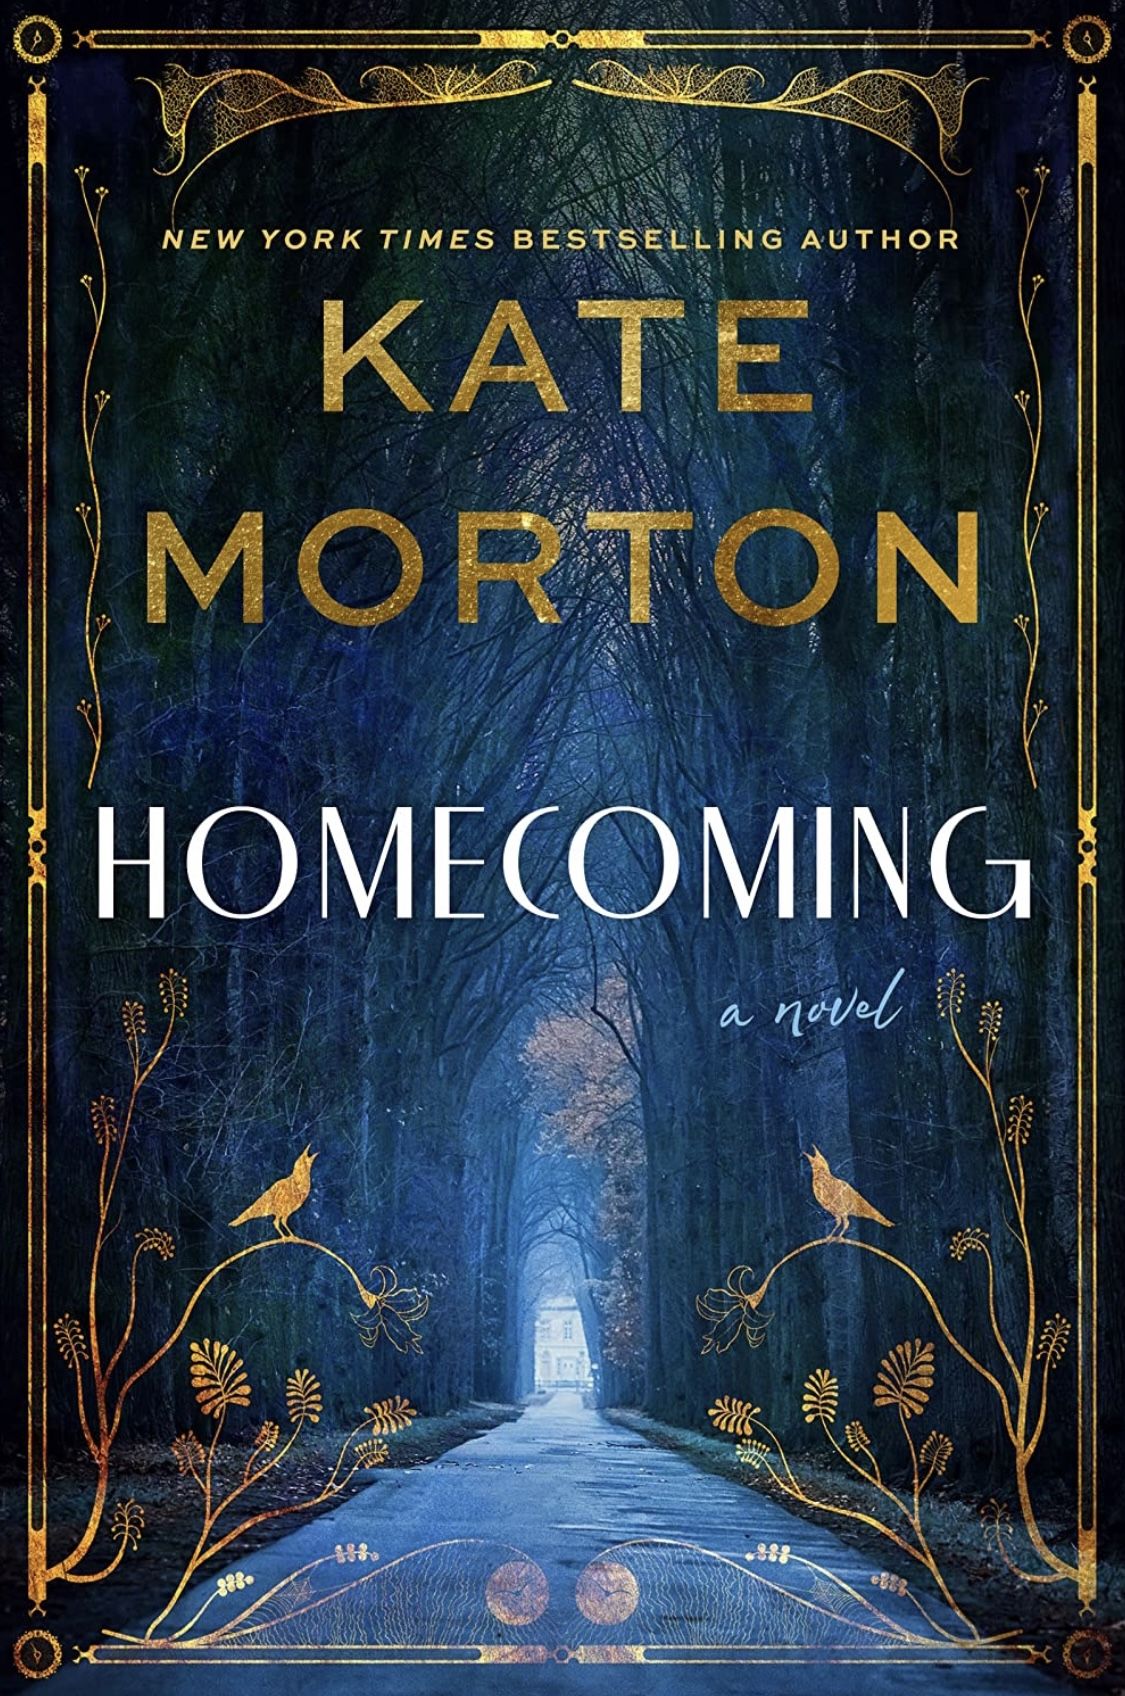 Couverture du livre Homecoming de Kate Morton